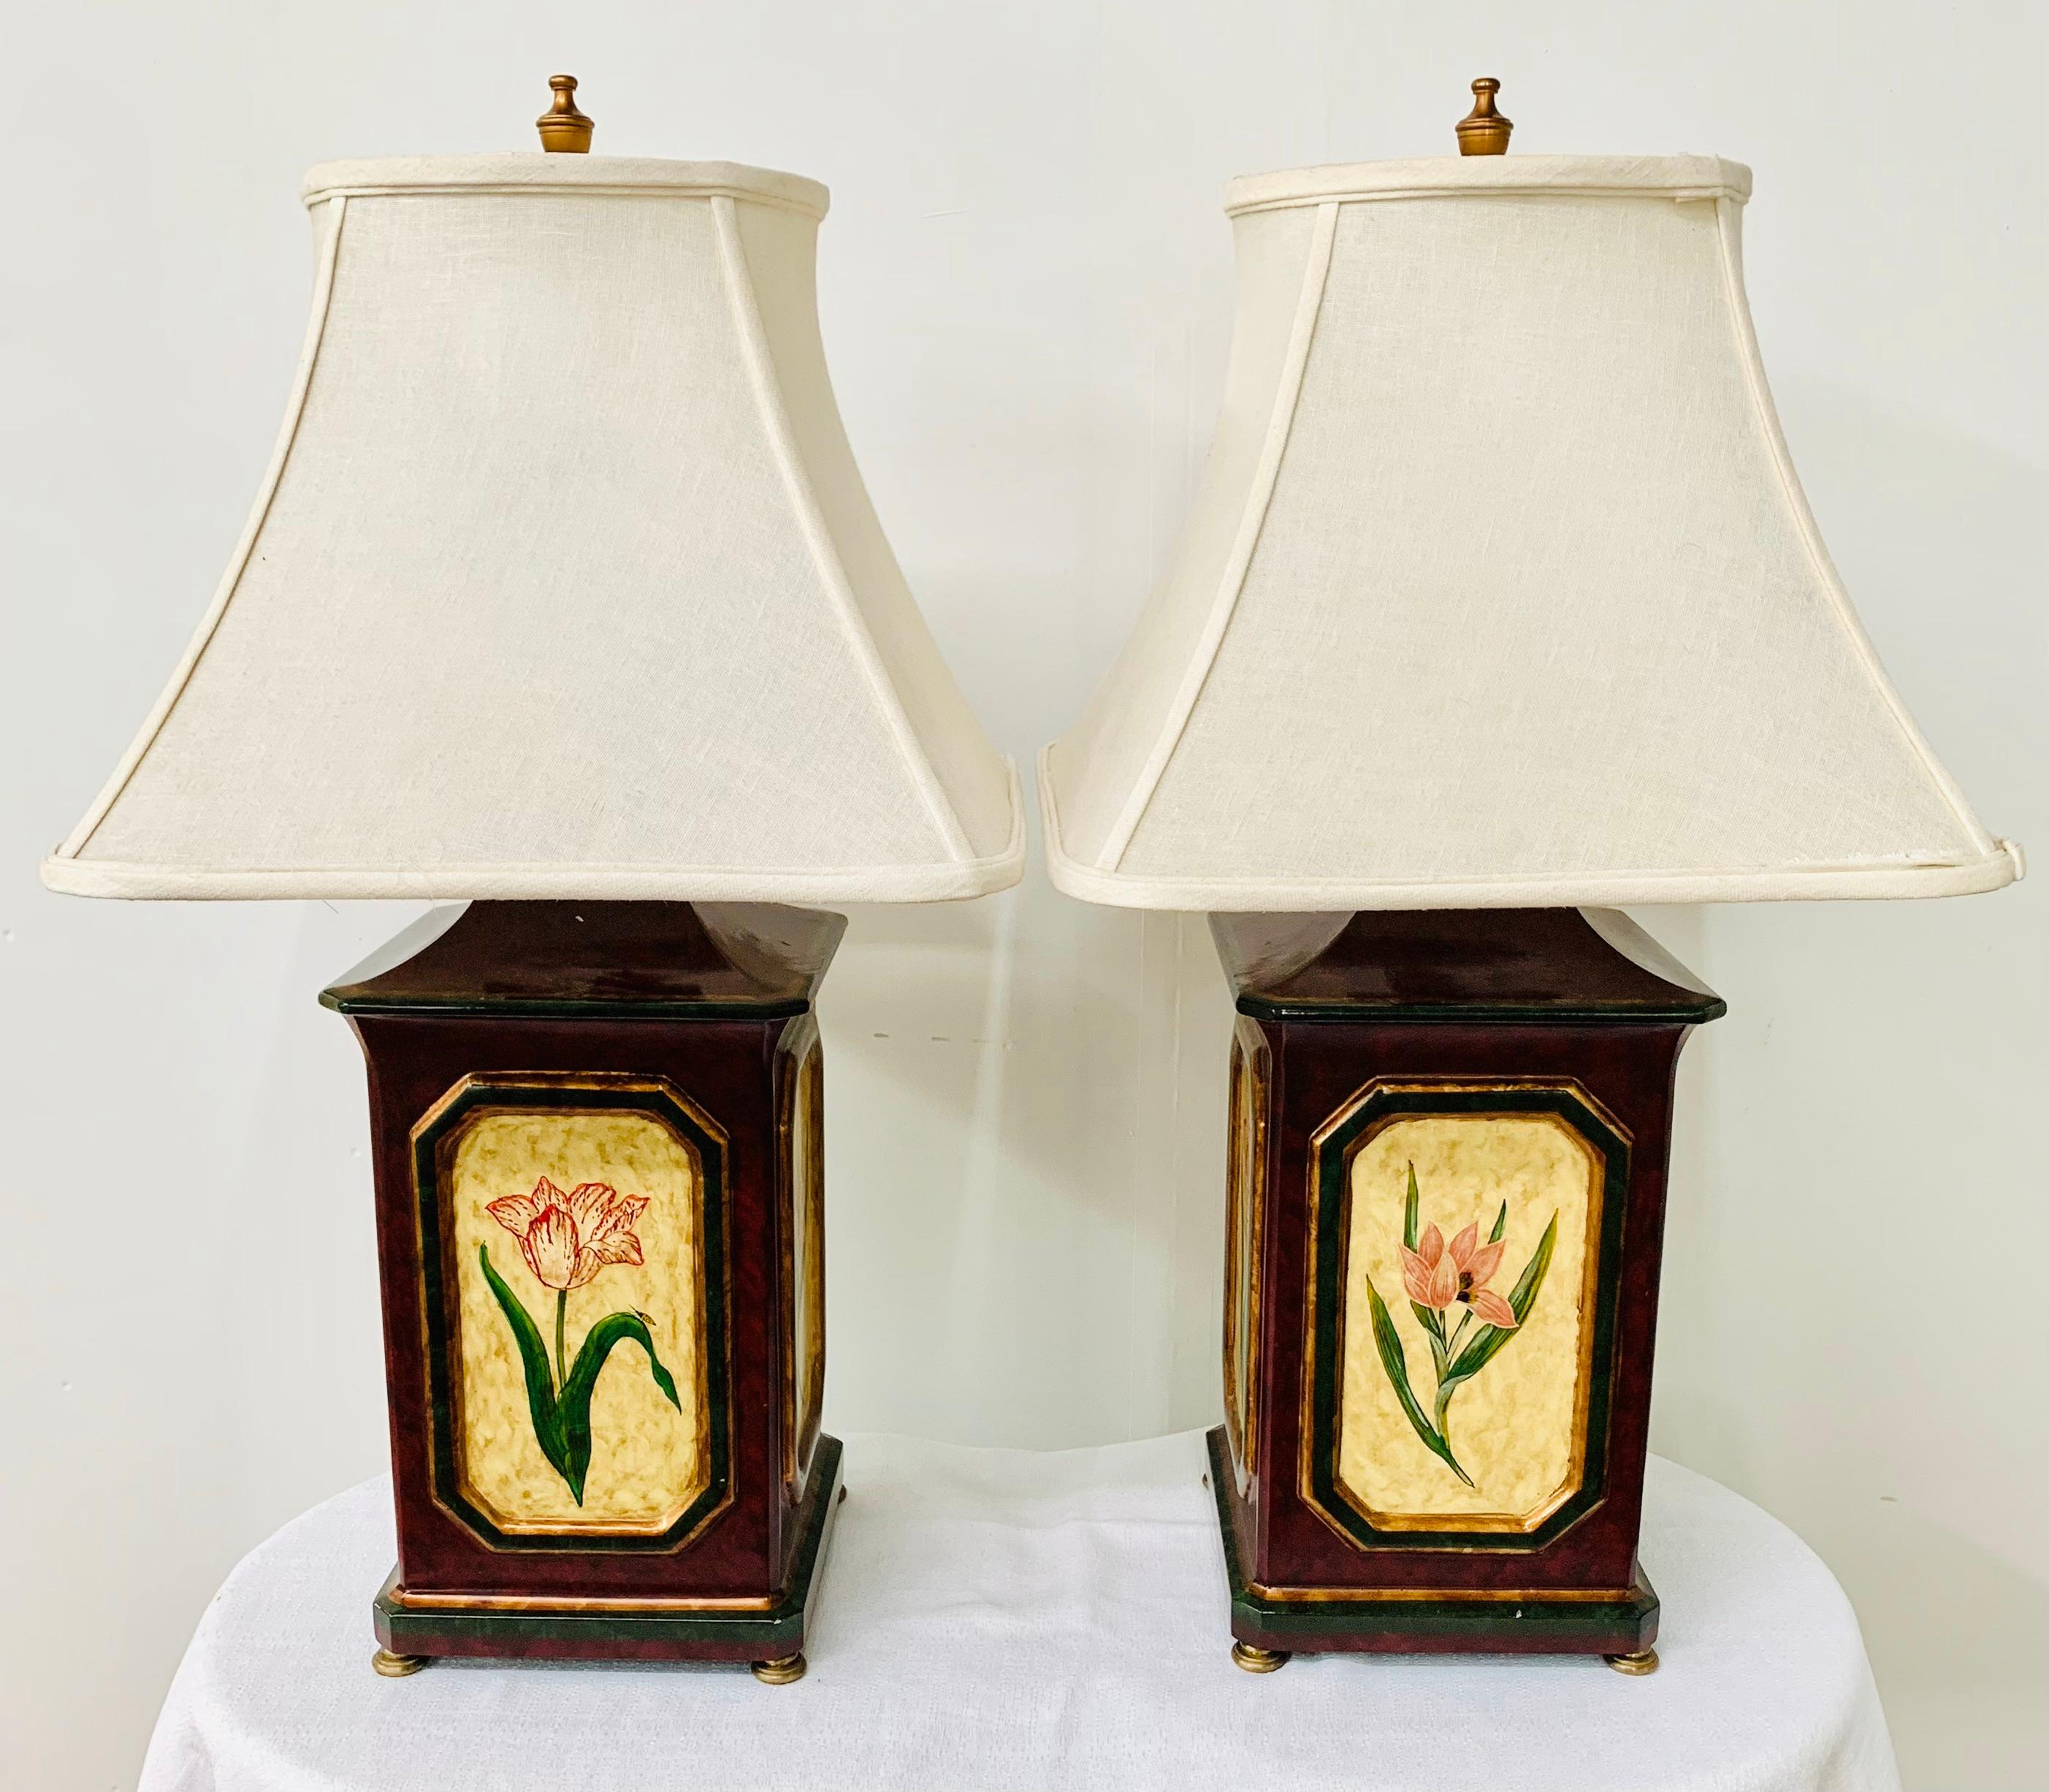 Dieses elegante Paar orientalischer, handbemalter Holztischlampen zeichnet sich durch ein feines, handgemaltes Blumenmuster auf den vier Seiten des Lampenfußes aus. Das Paar ist eine klassische und stilvolle Ergänzung für Ihr Wohnzimmer.